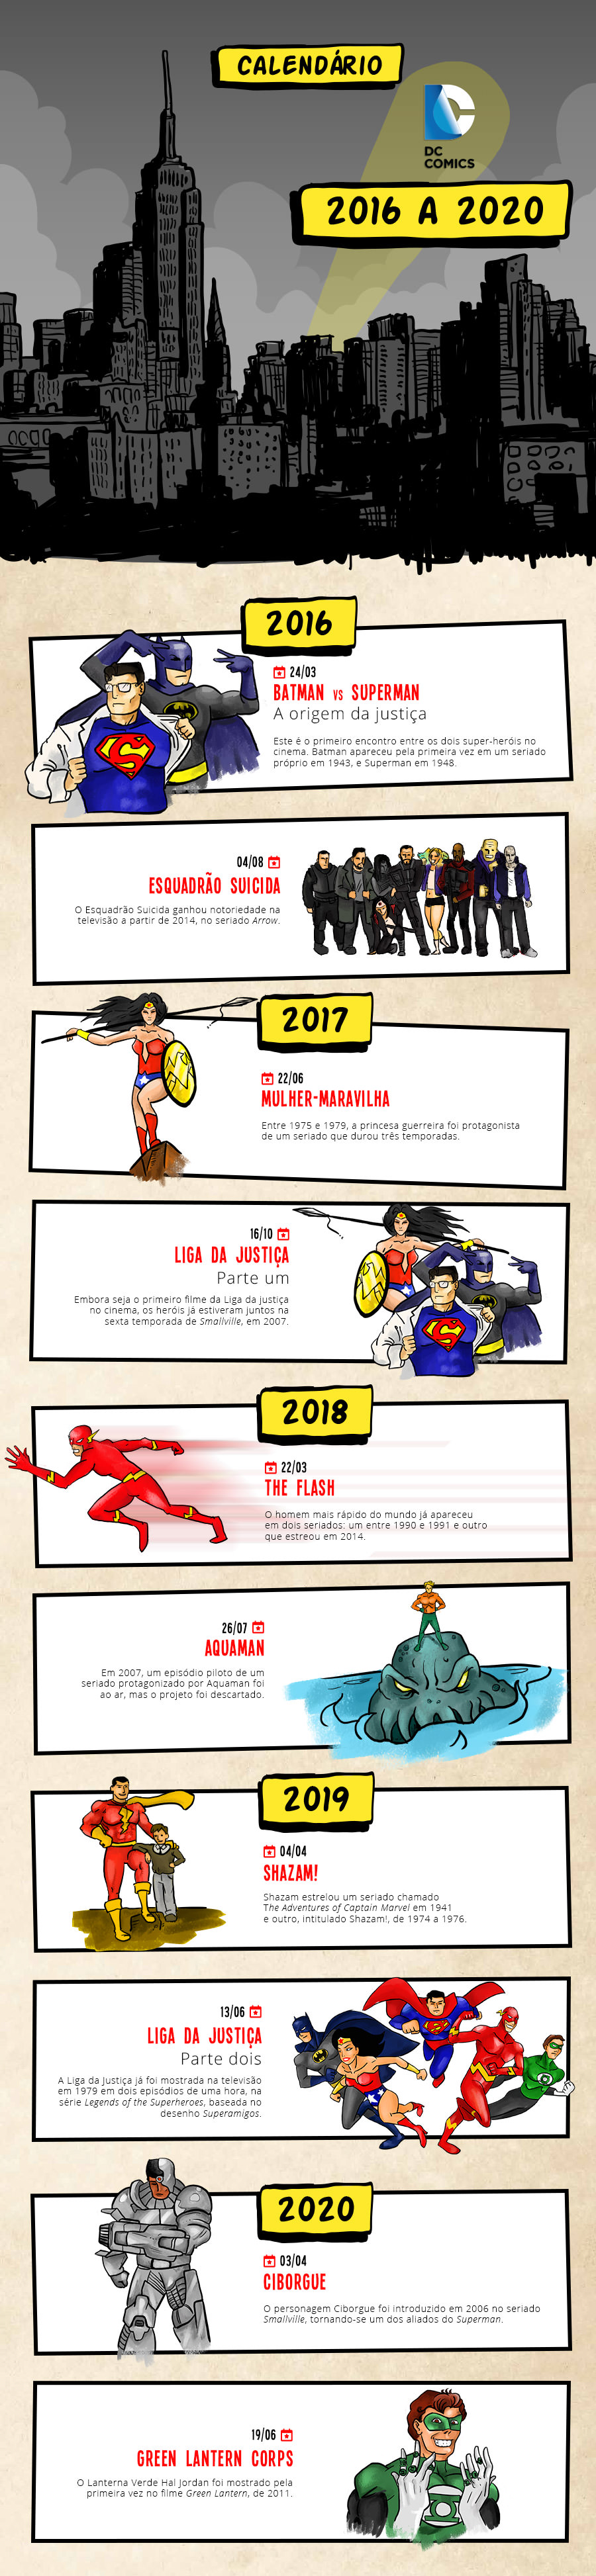 Todos os lançamentos da DC Comics até 2020